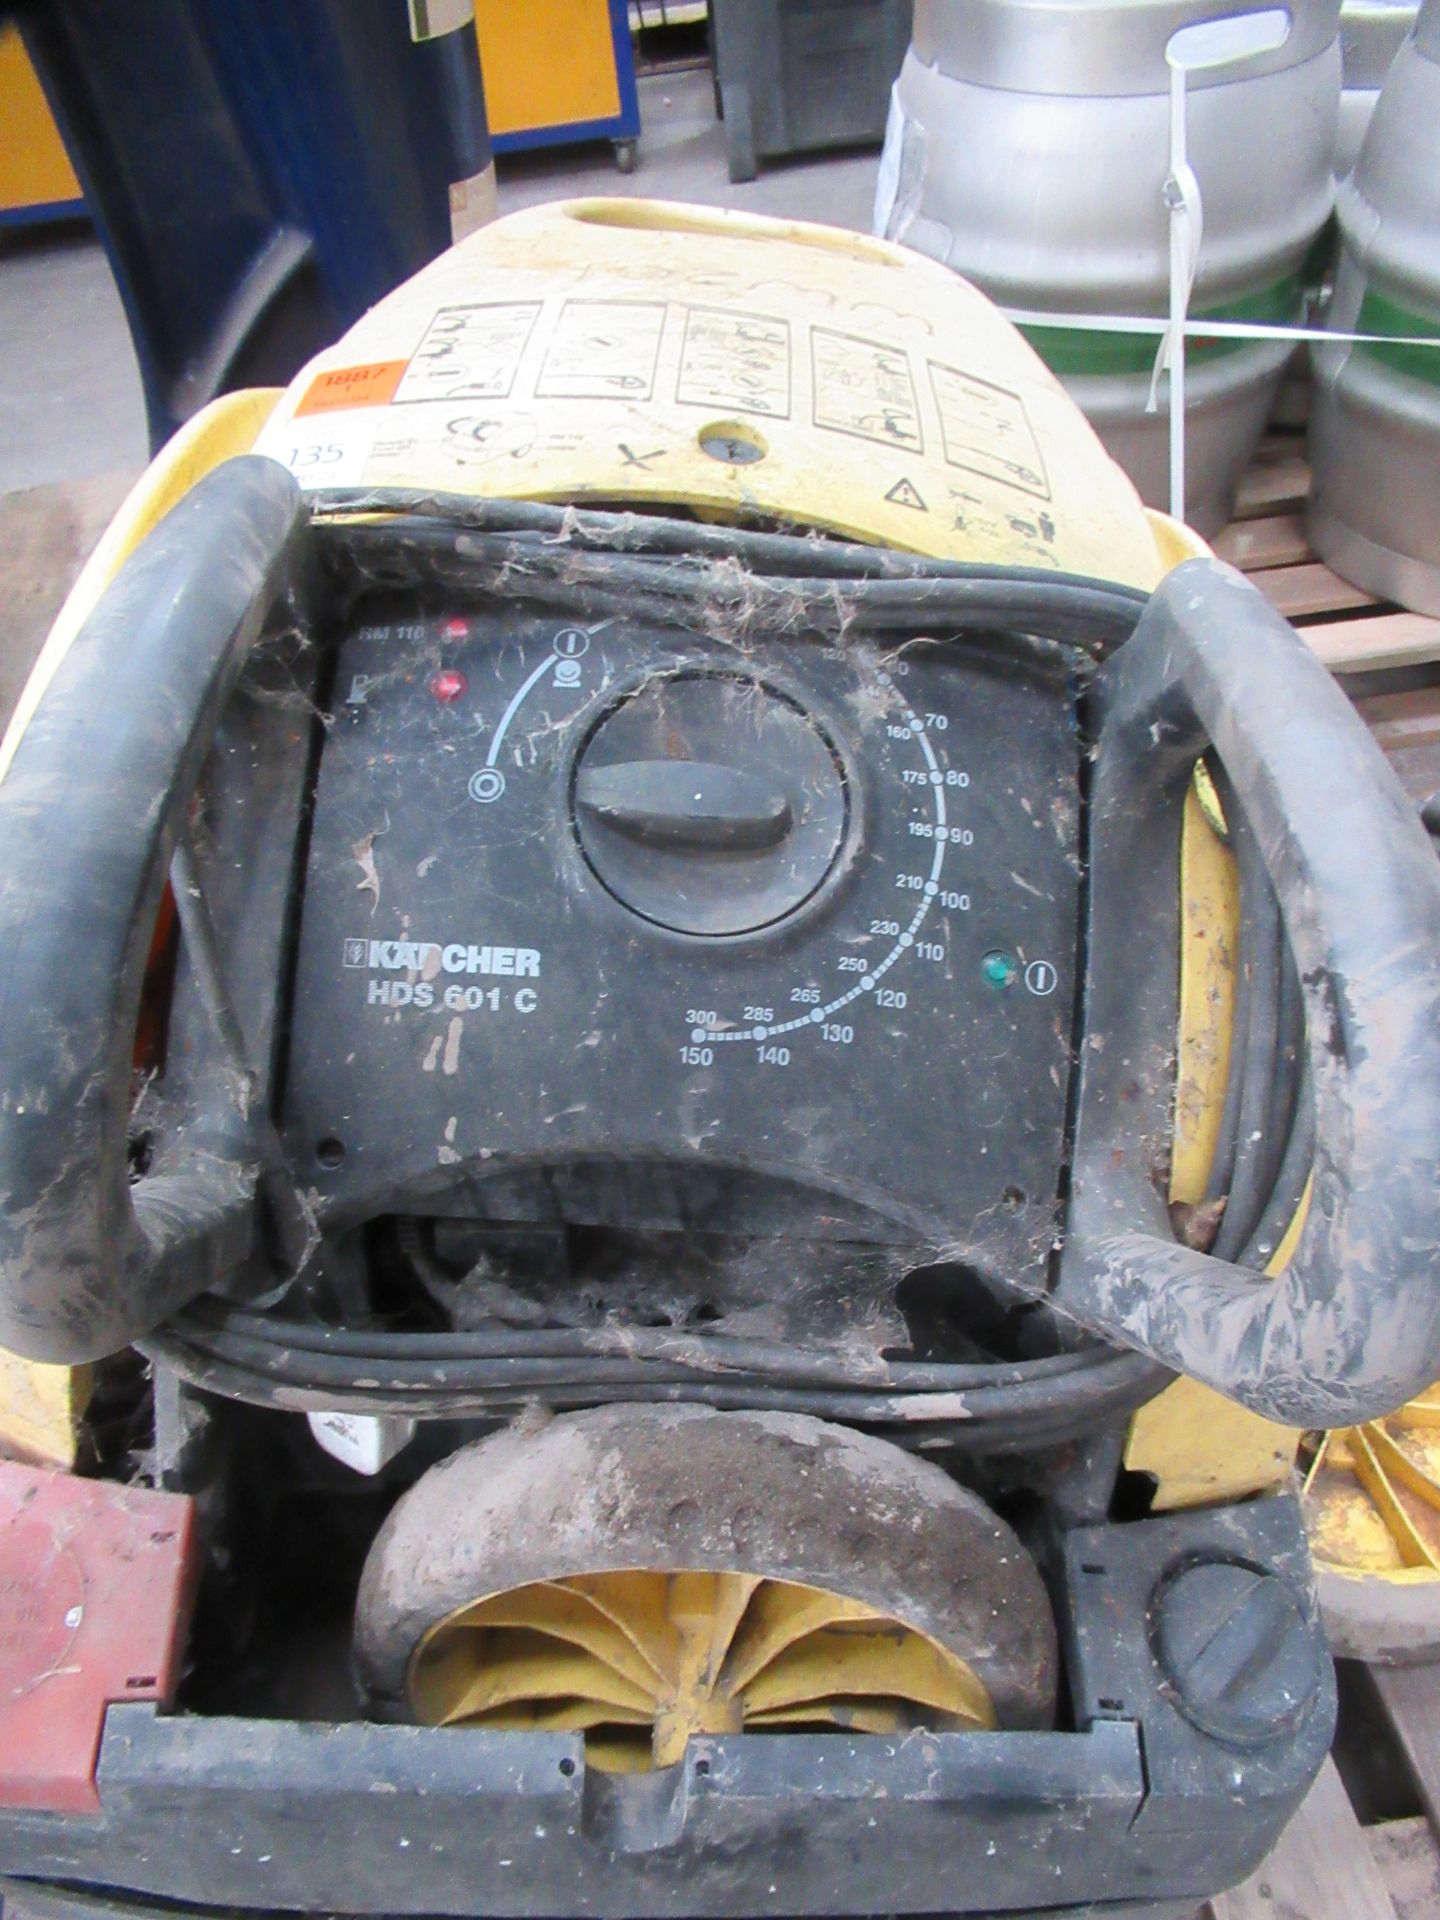 Karcher HDS 601 C Pressure Washer - Damaged - Image 5 of 6